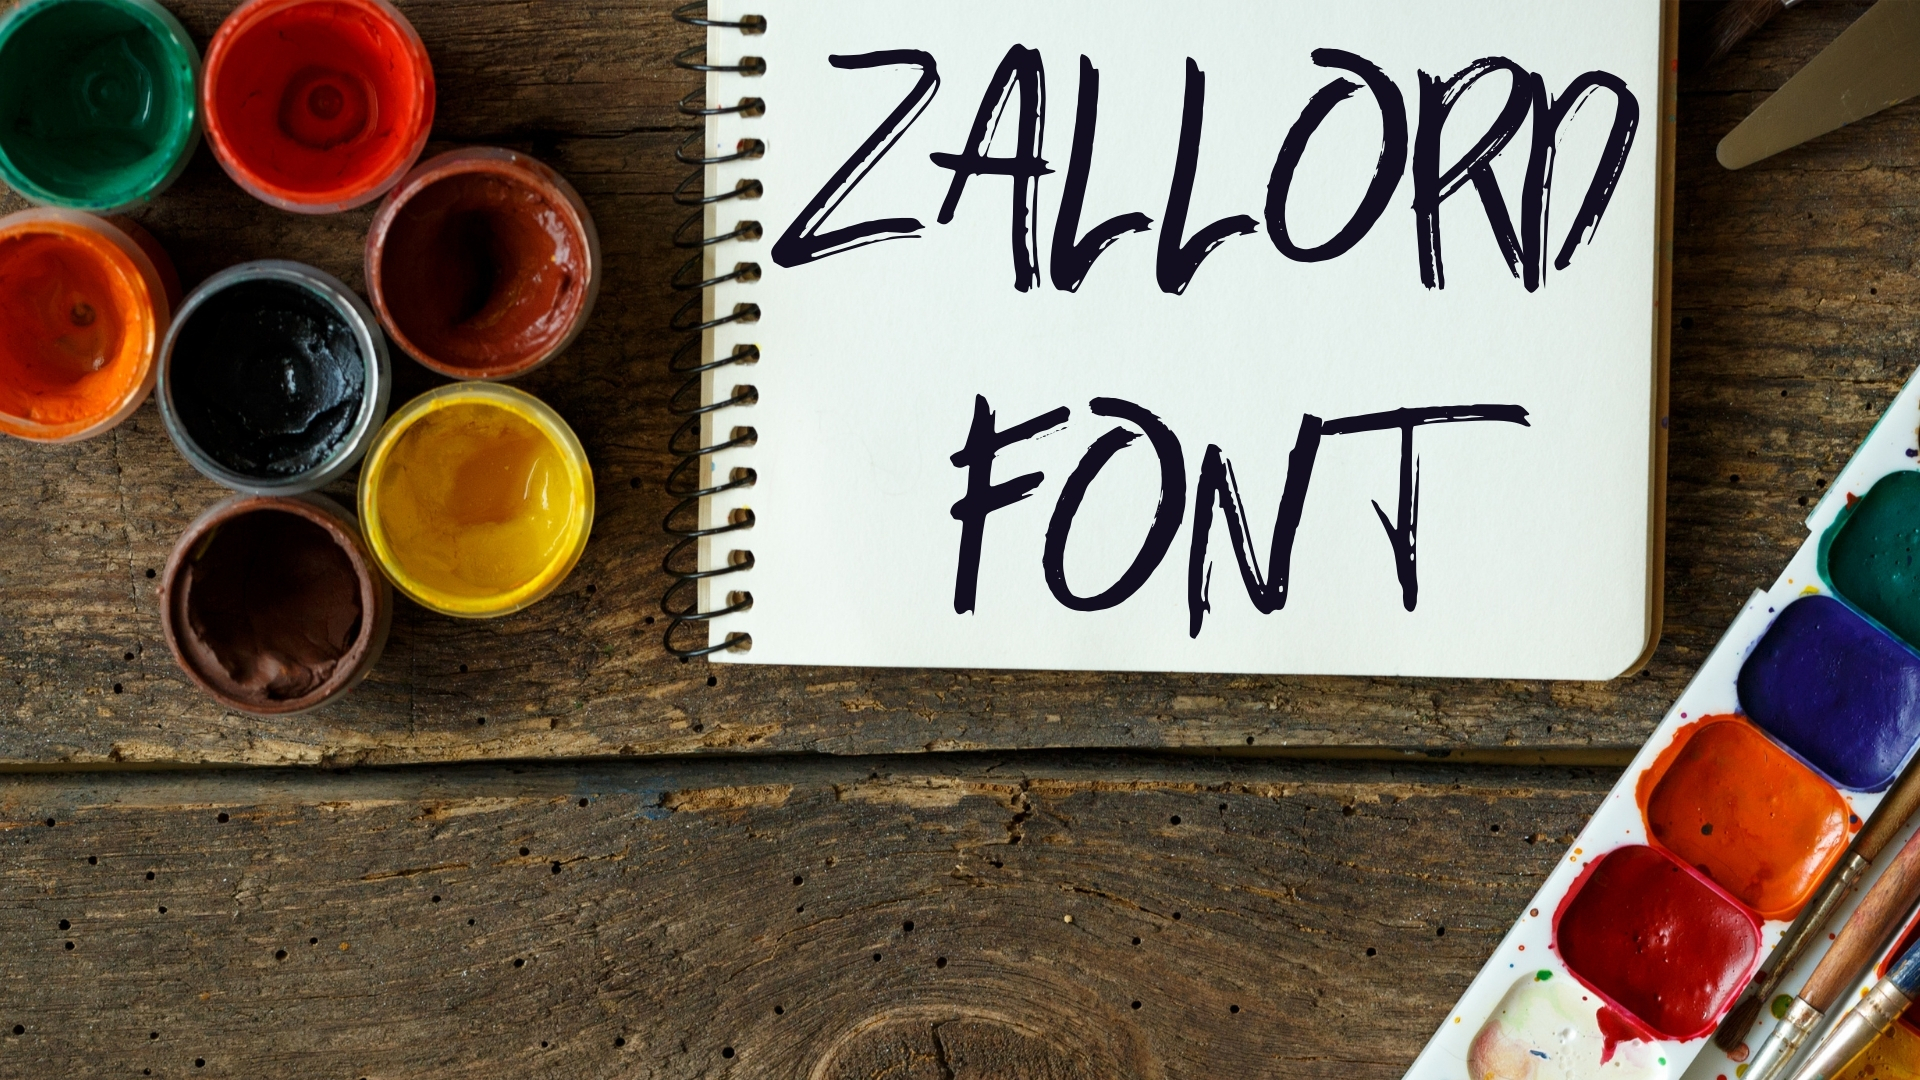 Zallord Font